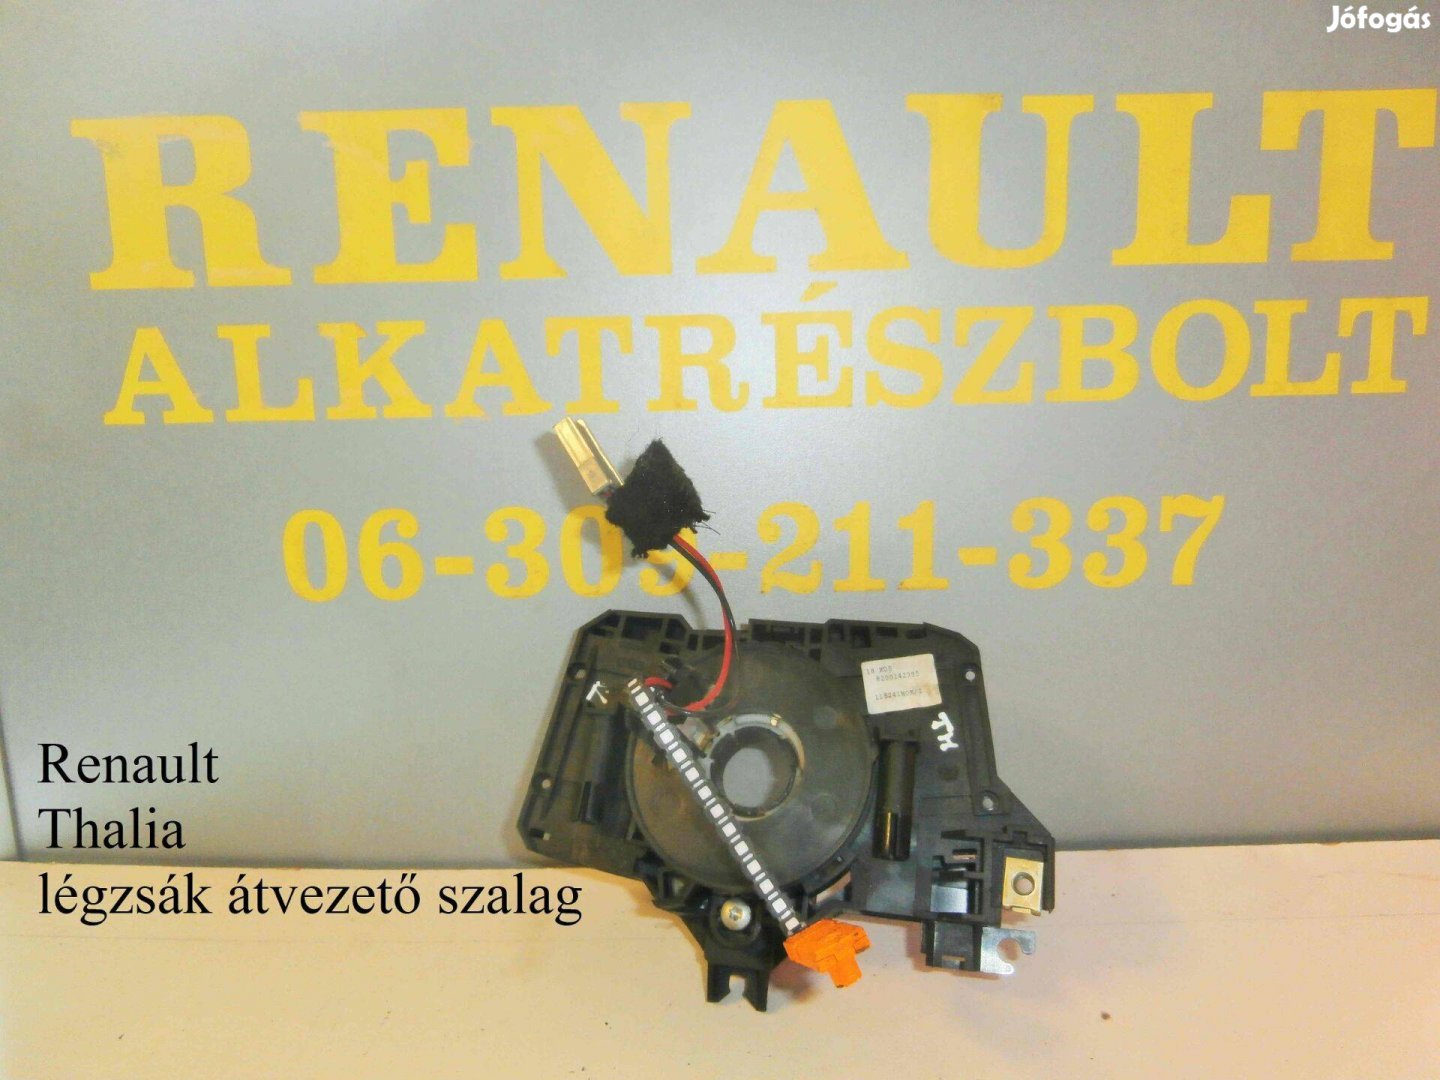 Renault Thalia Légzsákátvezető szalag